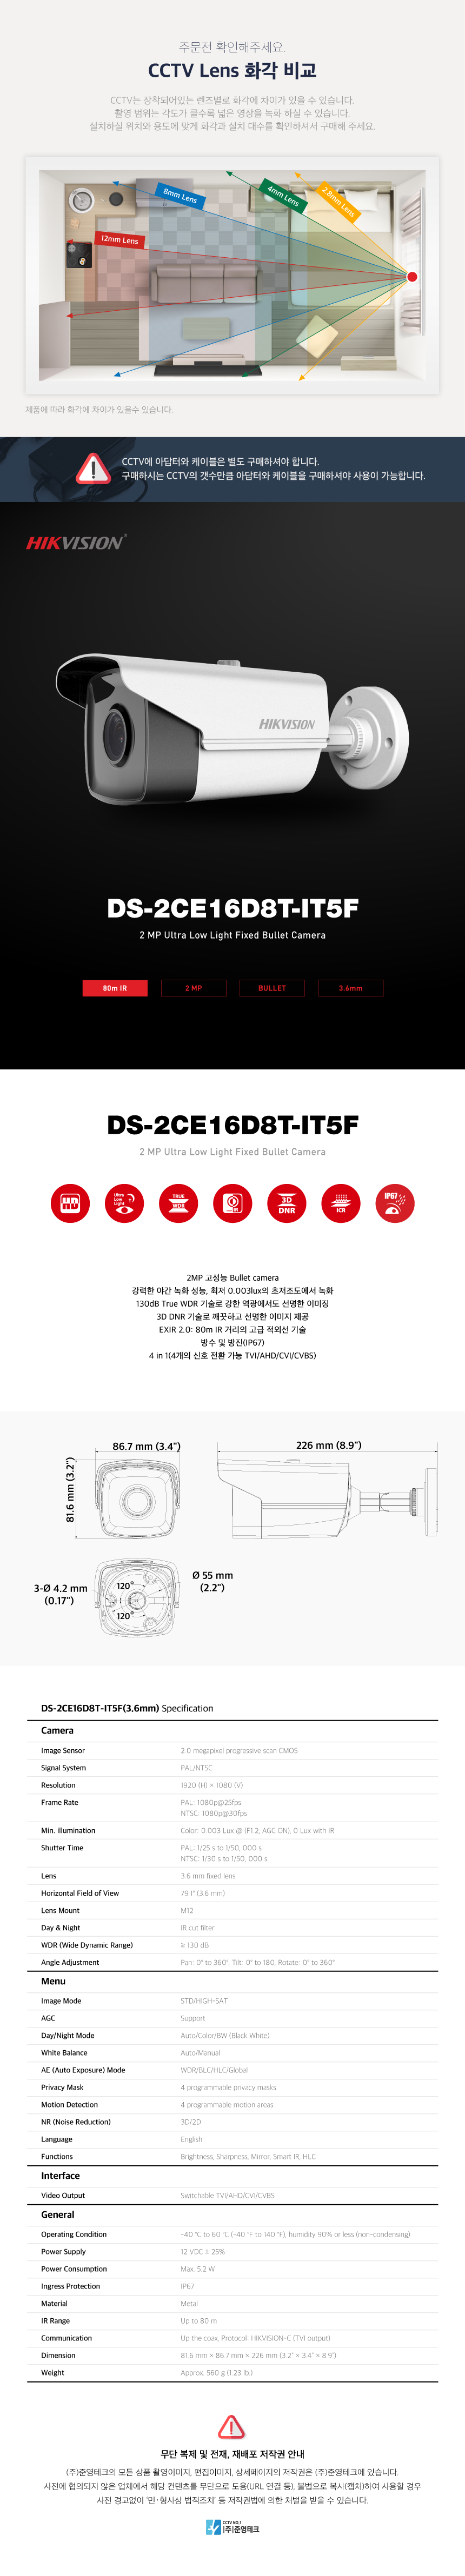 DS-2CE16D8T-IT5F_3.6mm_172830_175805.png